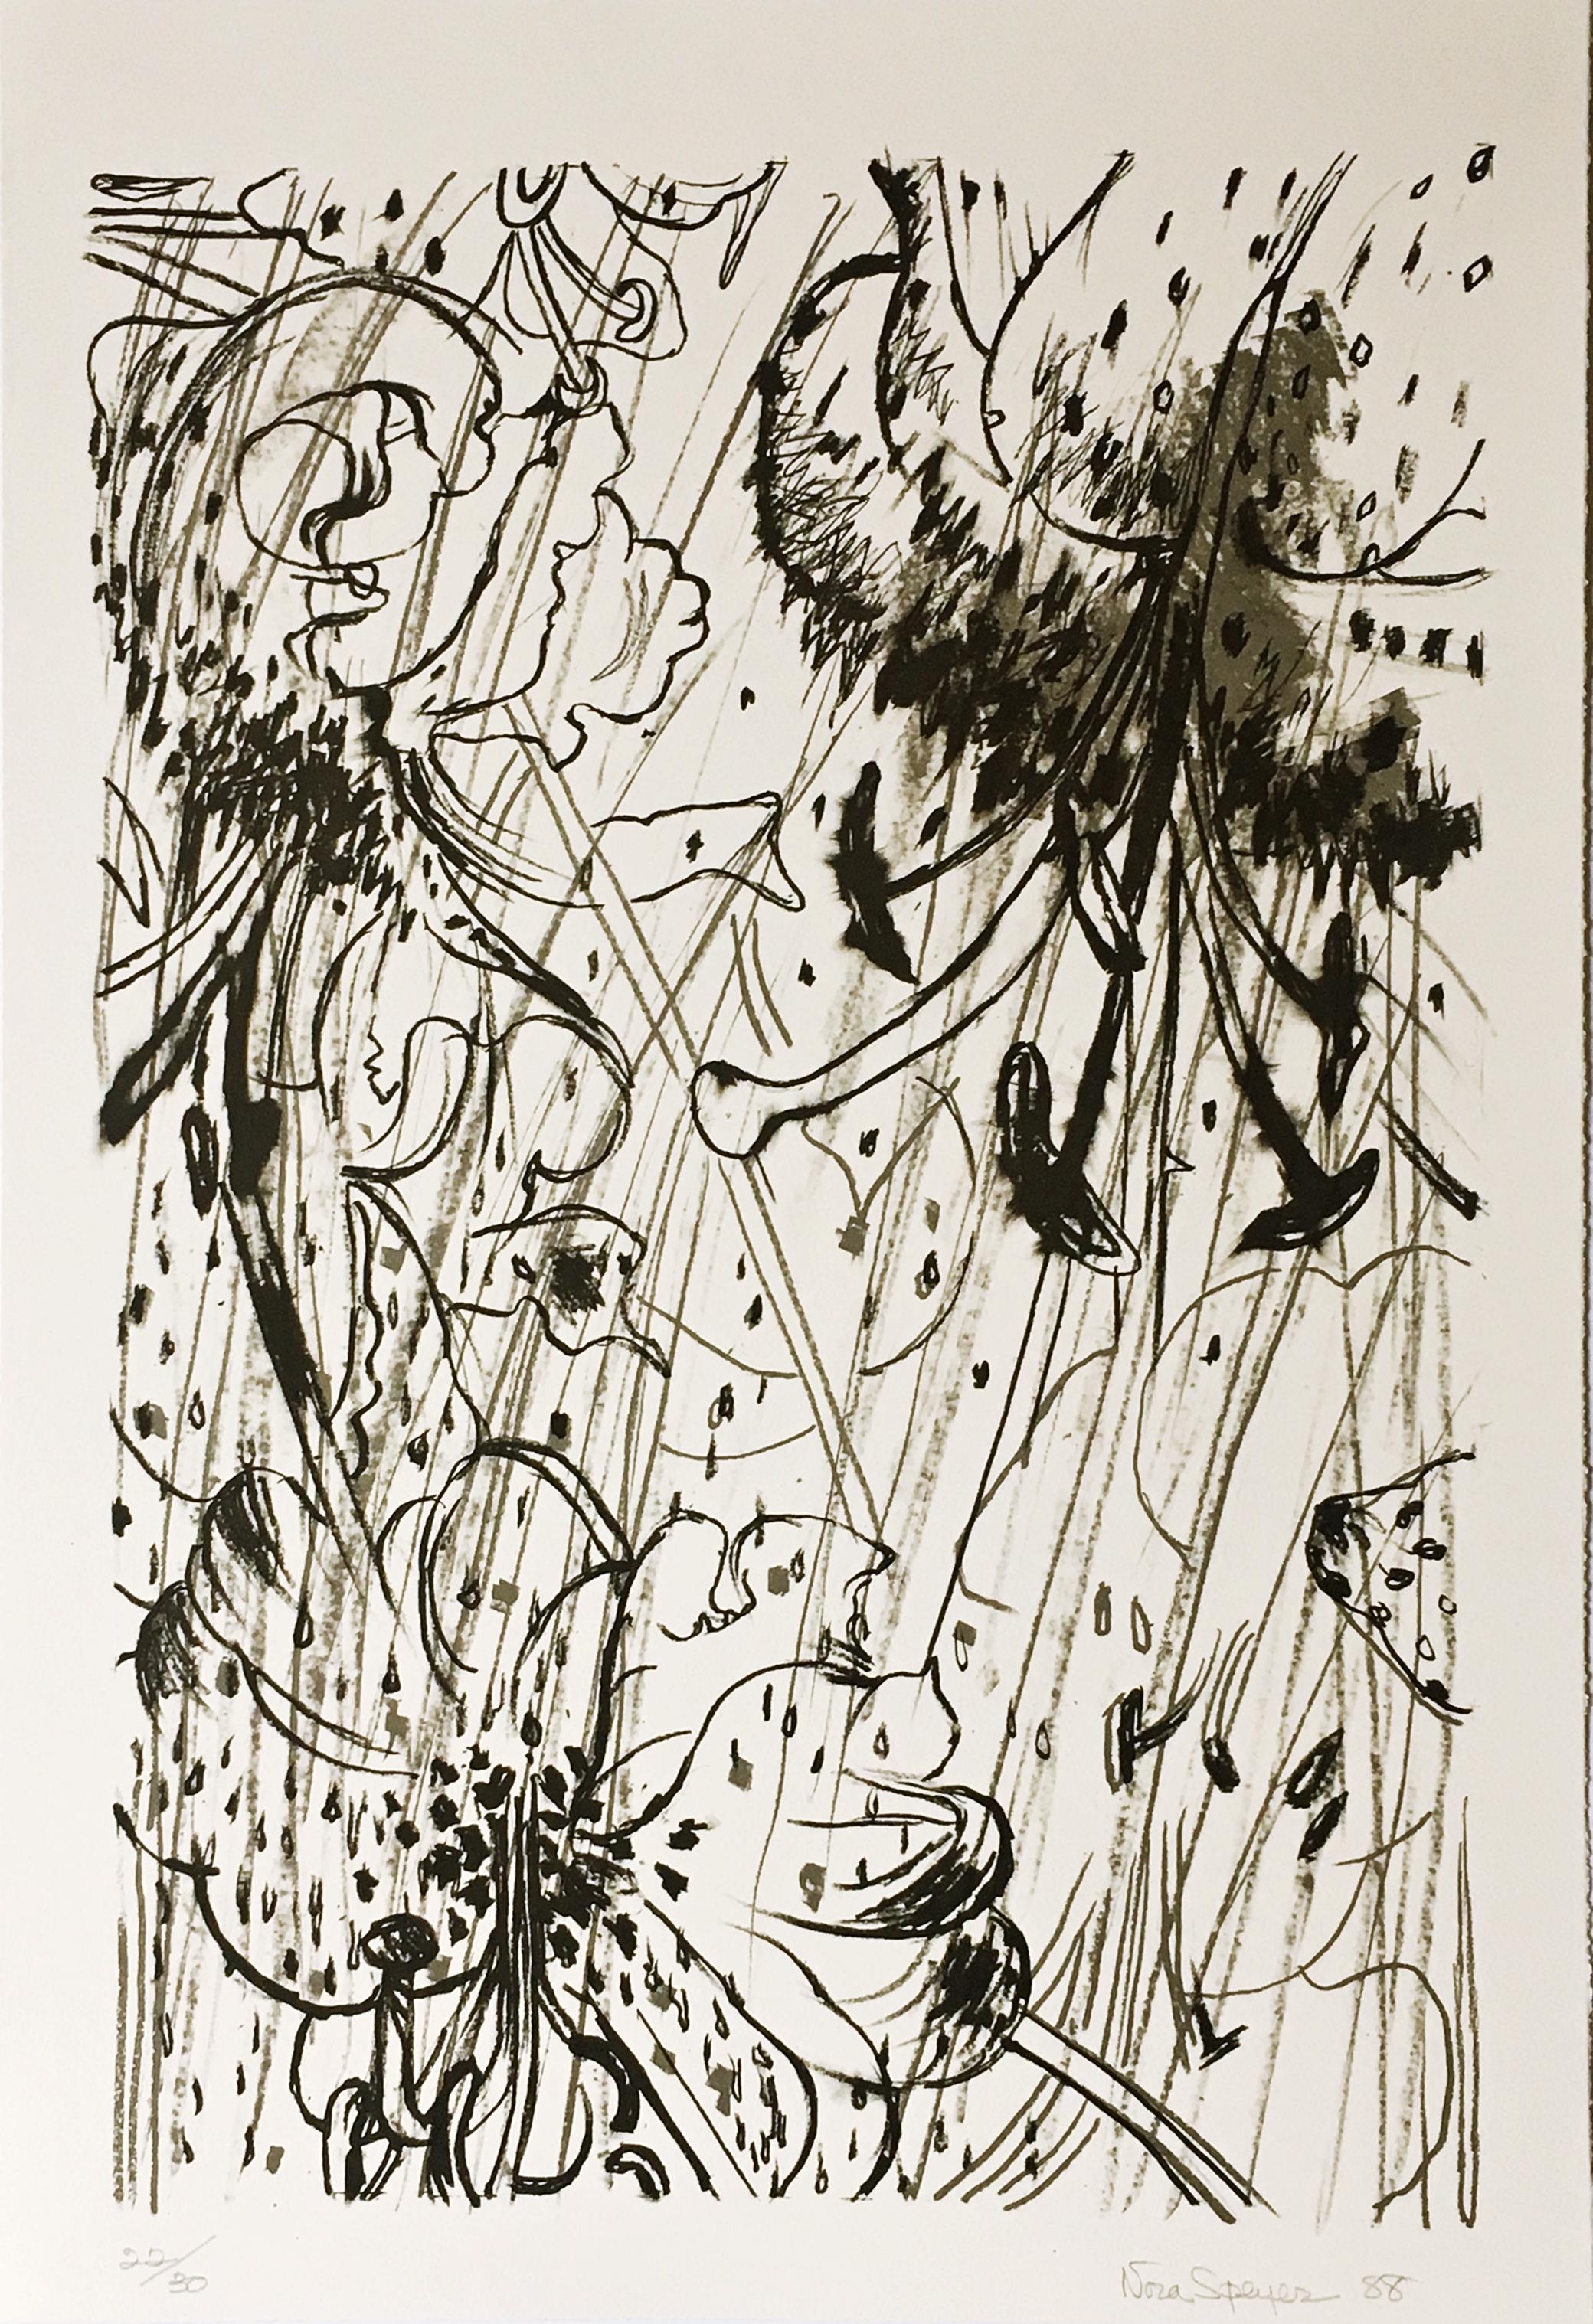 Nora Speyer
Sans titre, extrait du portfolio de la Long Point Gallery, 1988
Lithographie sur papier avec des bords décolorés
Signée à la main, numérotée 22/30 et datée sur la partie inférieure du recto.
22 × 15 pouces
Non encadré

Signée à la main,